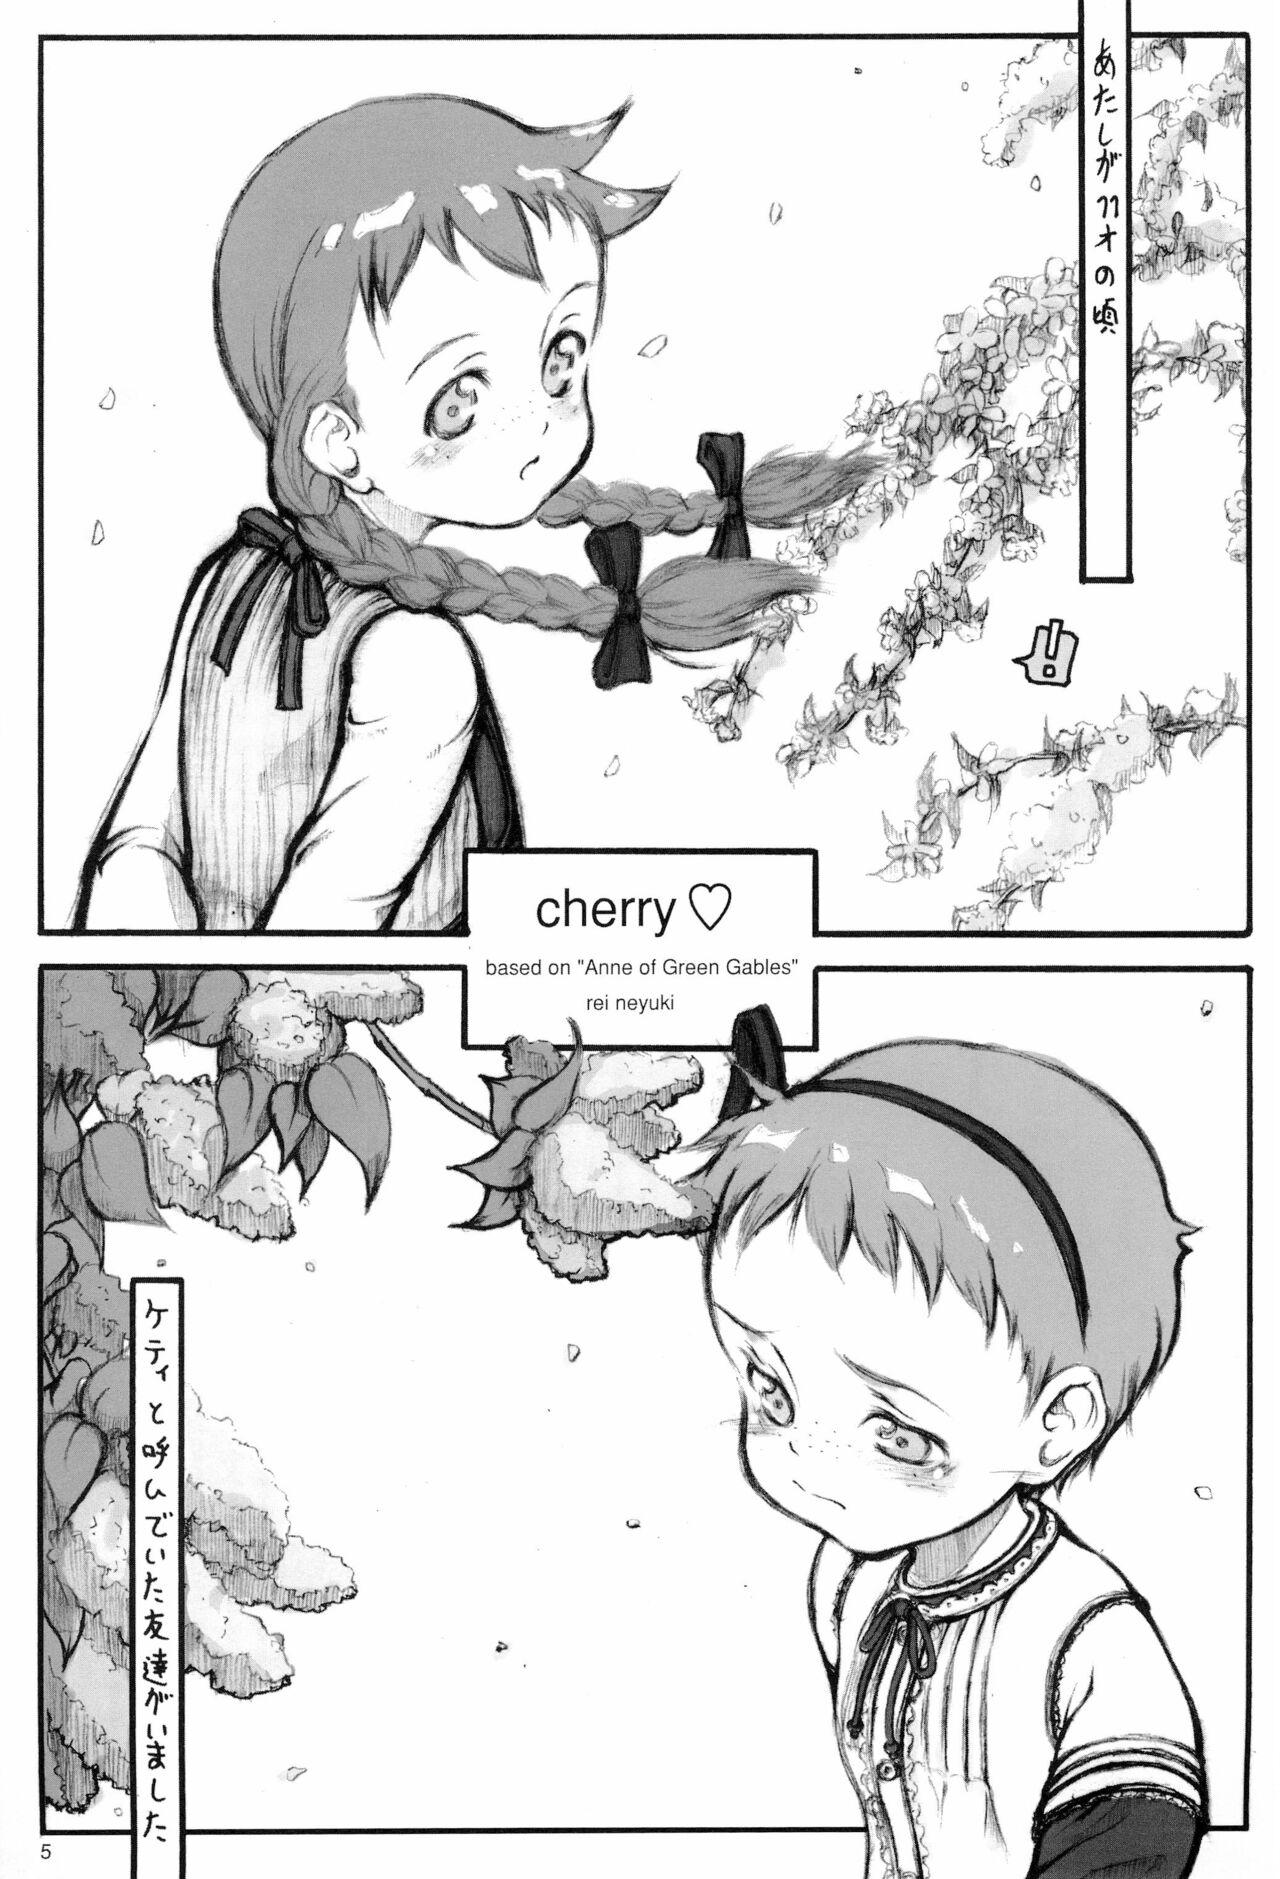 cherry 4